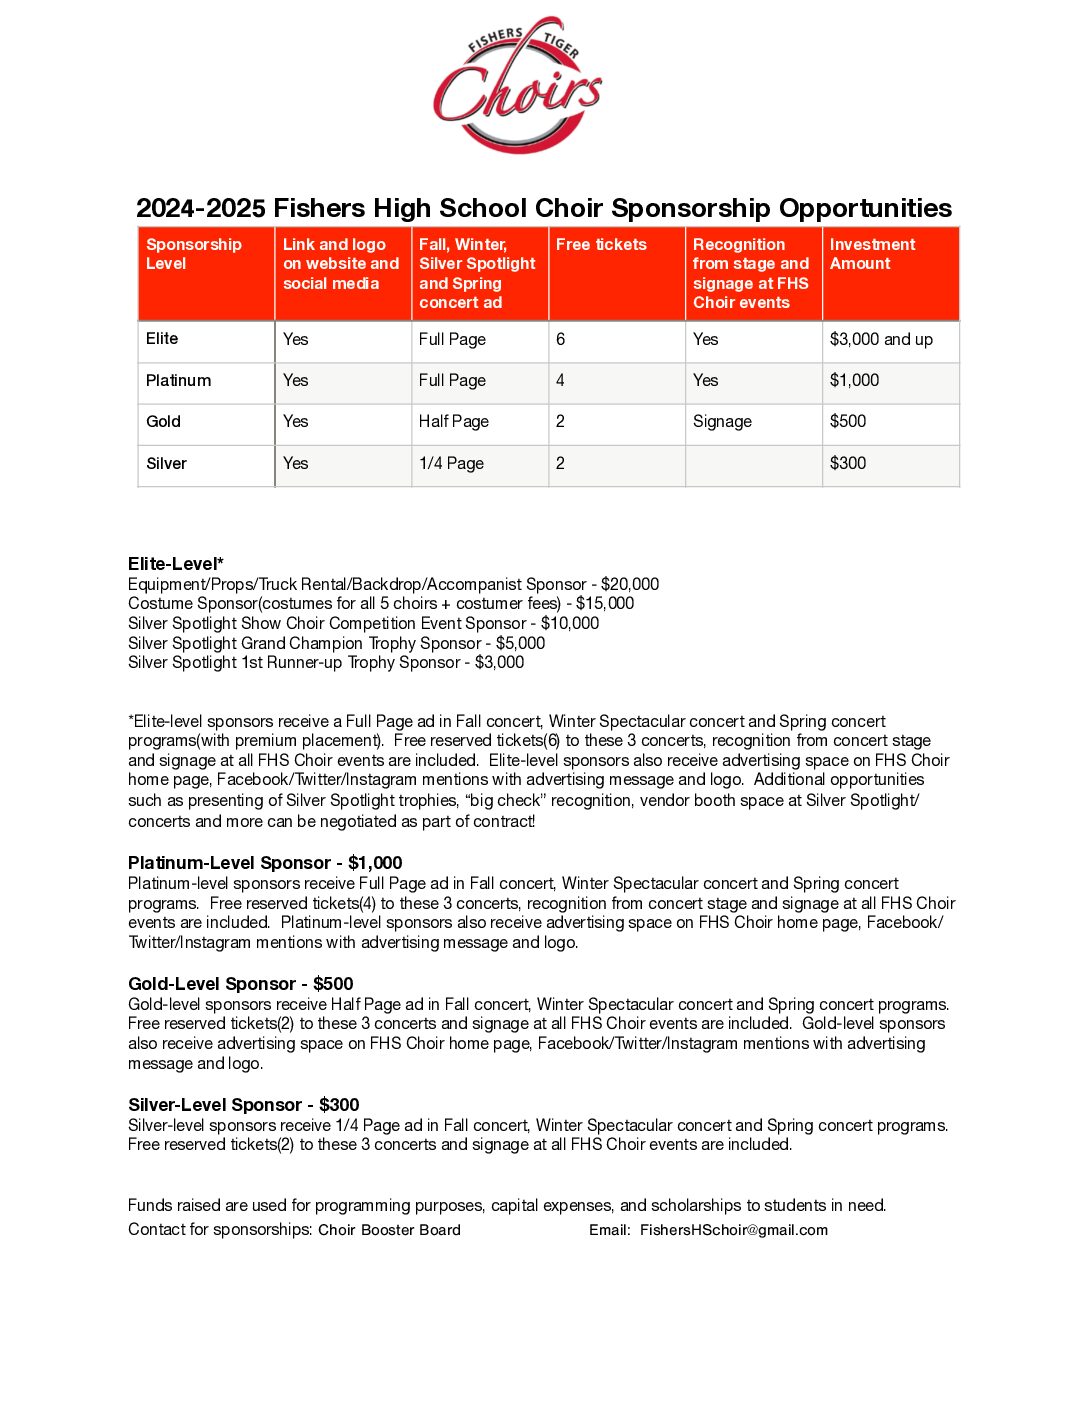 2024-25 FHS Choir Sponsorship Levels